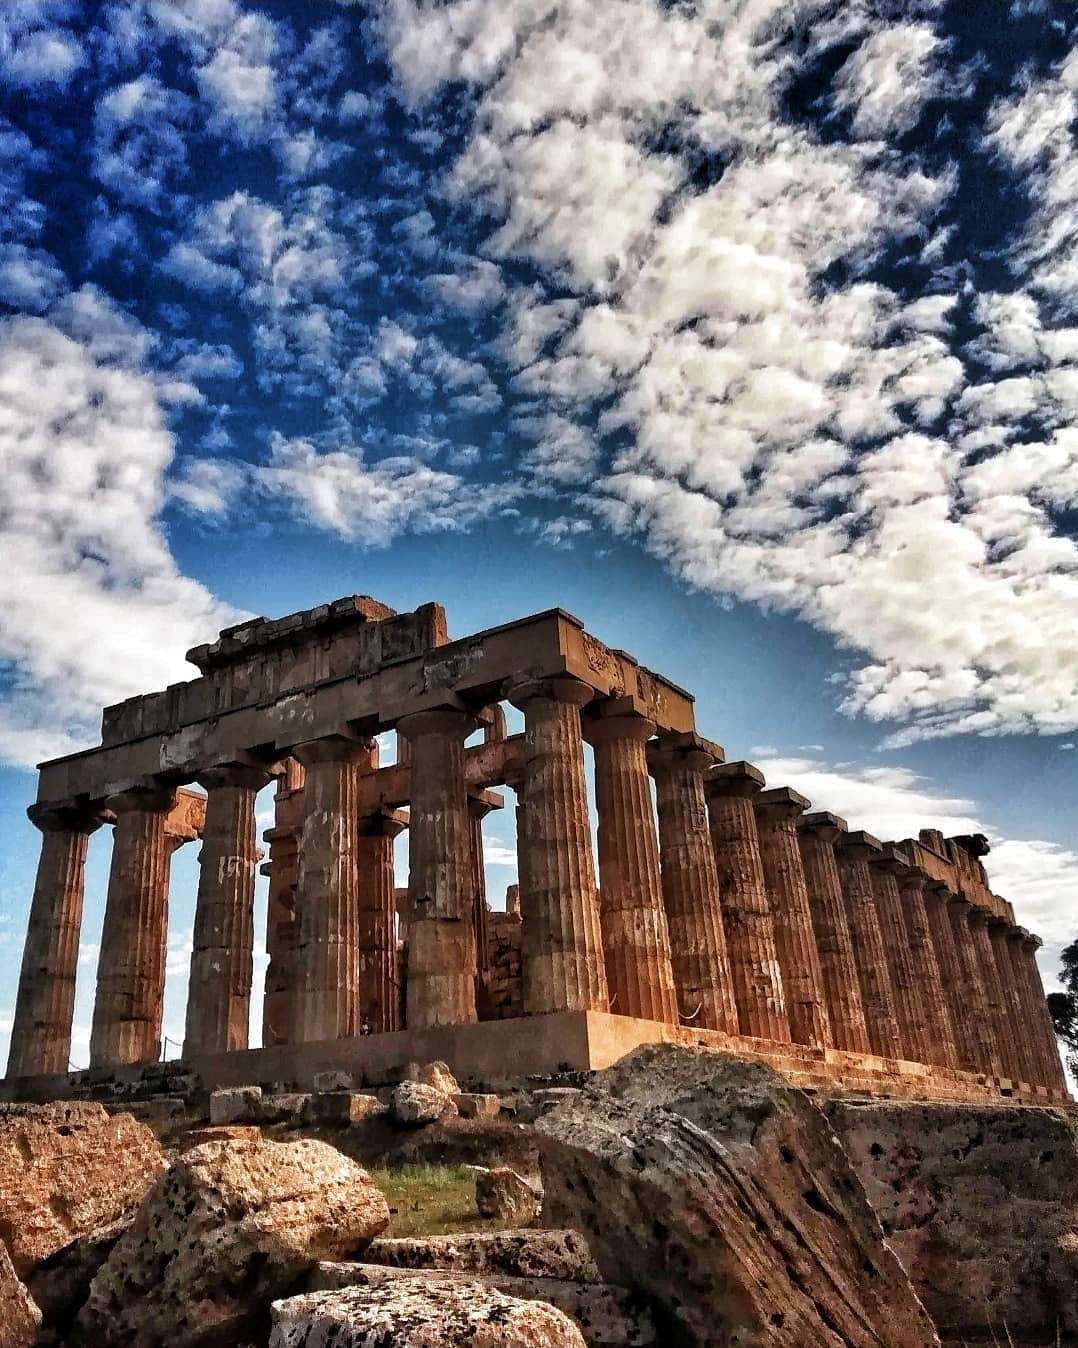 Du lịch Hy Lạp: Hy Lạp - một trong những điểm đến hấp dẫn nhất của châu Âu, là nơi sở hữu những di sản văn hoá cổ đại tuyệt vời nhất thế giới. Dạo bước trong những khu phố đông đúc khúc côn cầu, thăm các đền thờ, thủ đô Athens hoa lệ hay những bãi biển tuyệt đẹp, bạn sẽ tìm thấy những chân trời mới mẻ và đầy cảm hứng.